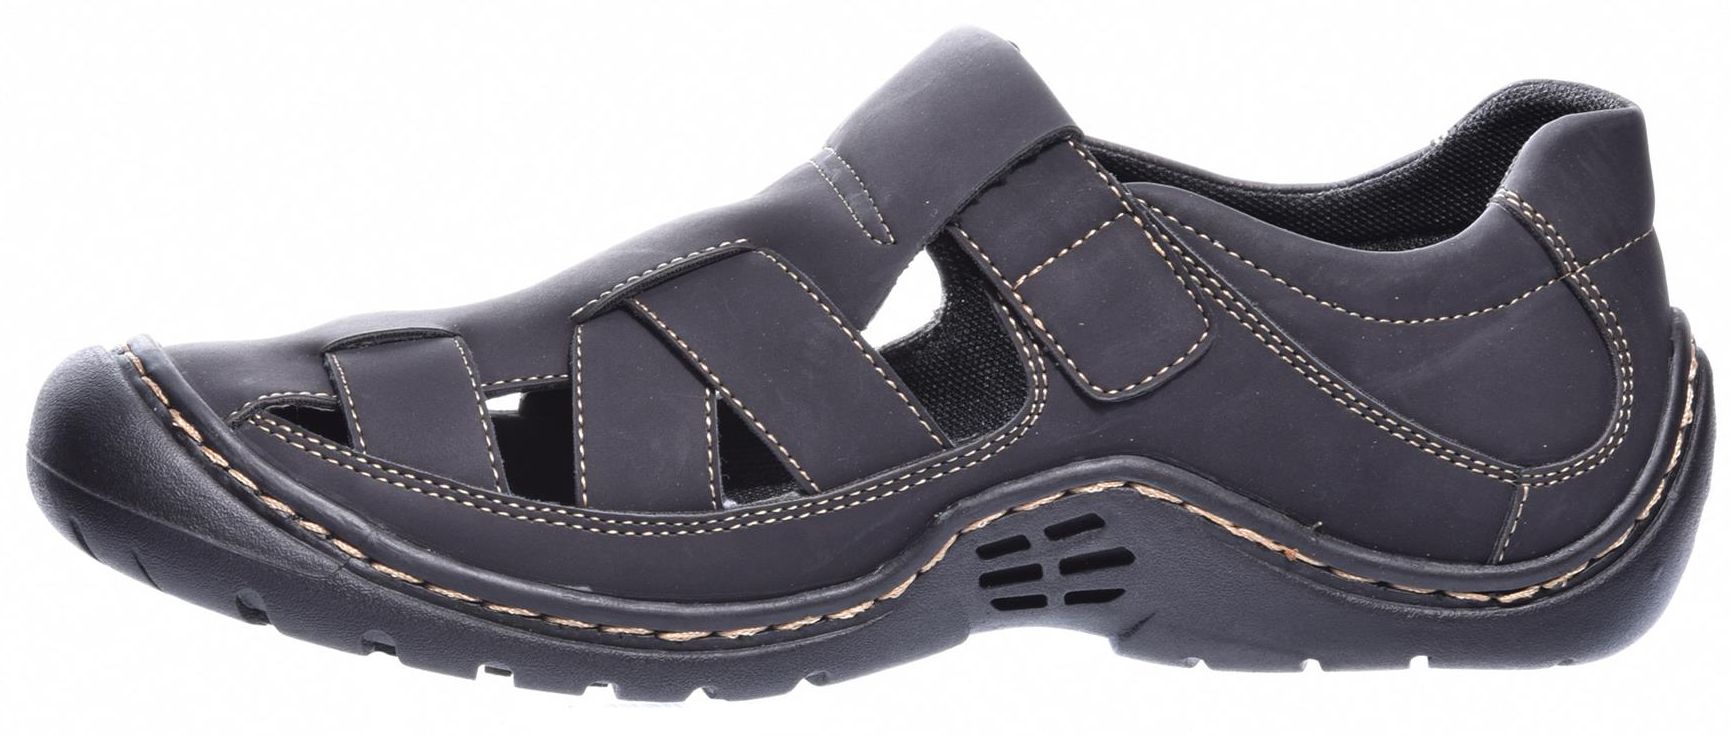 Men's summer shoes